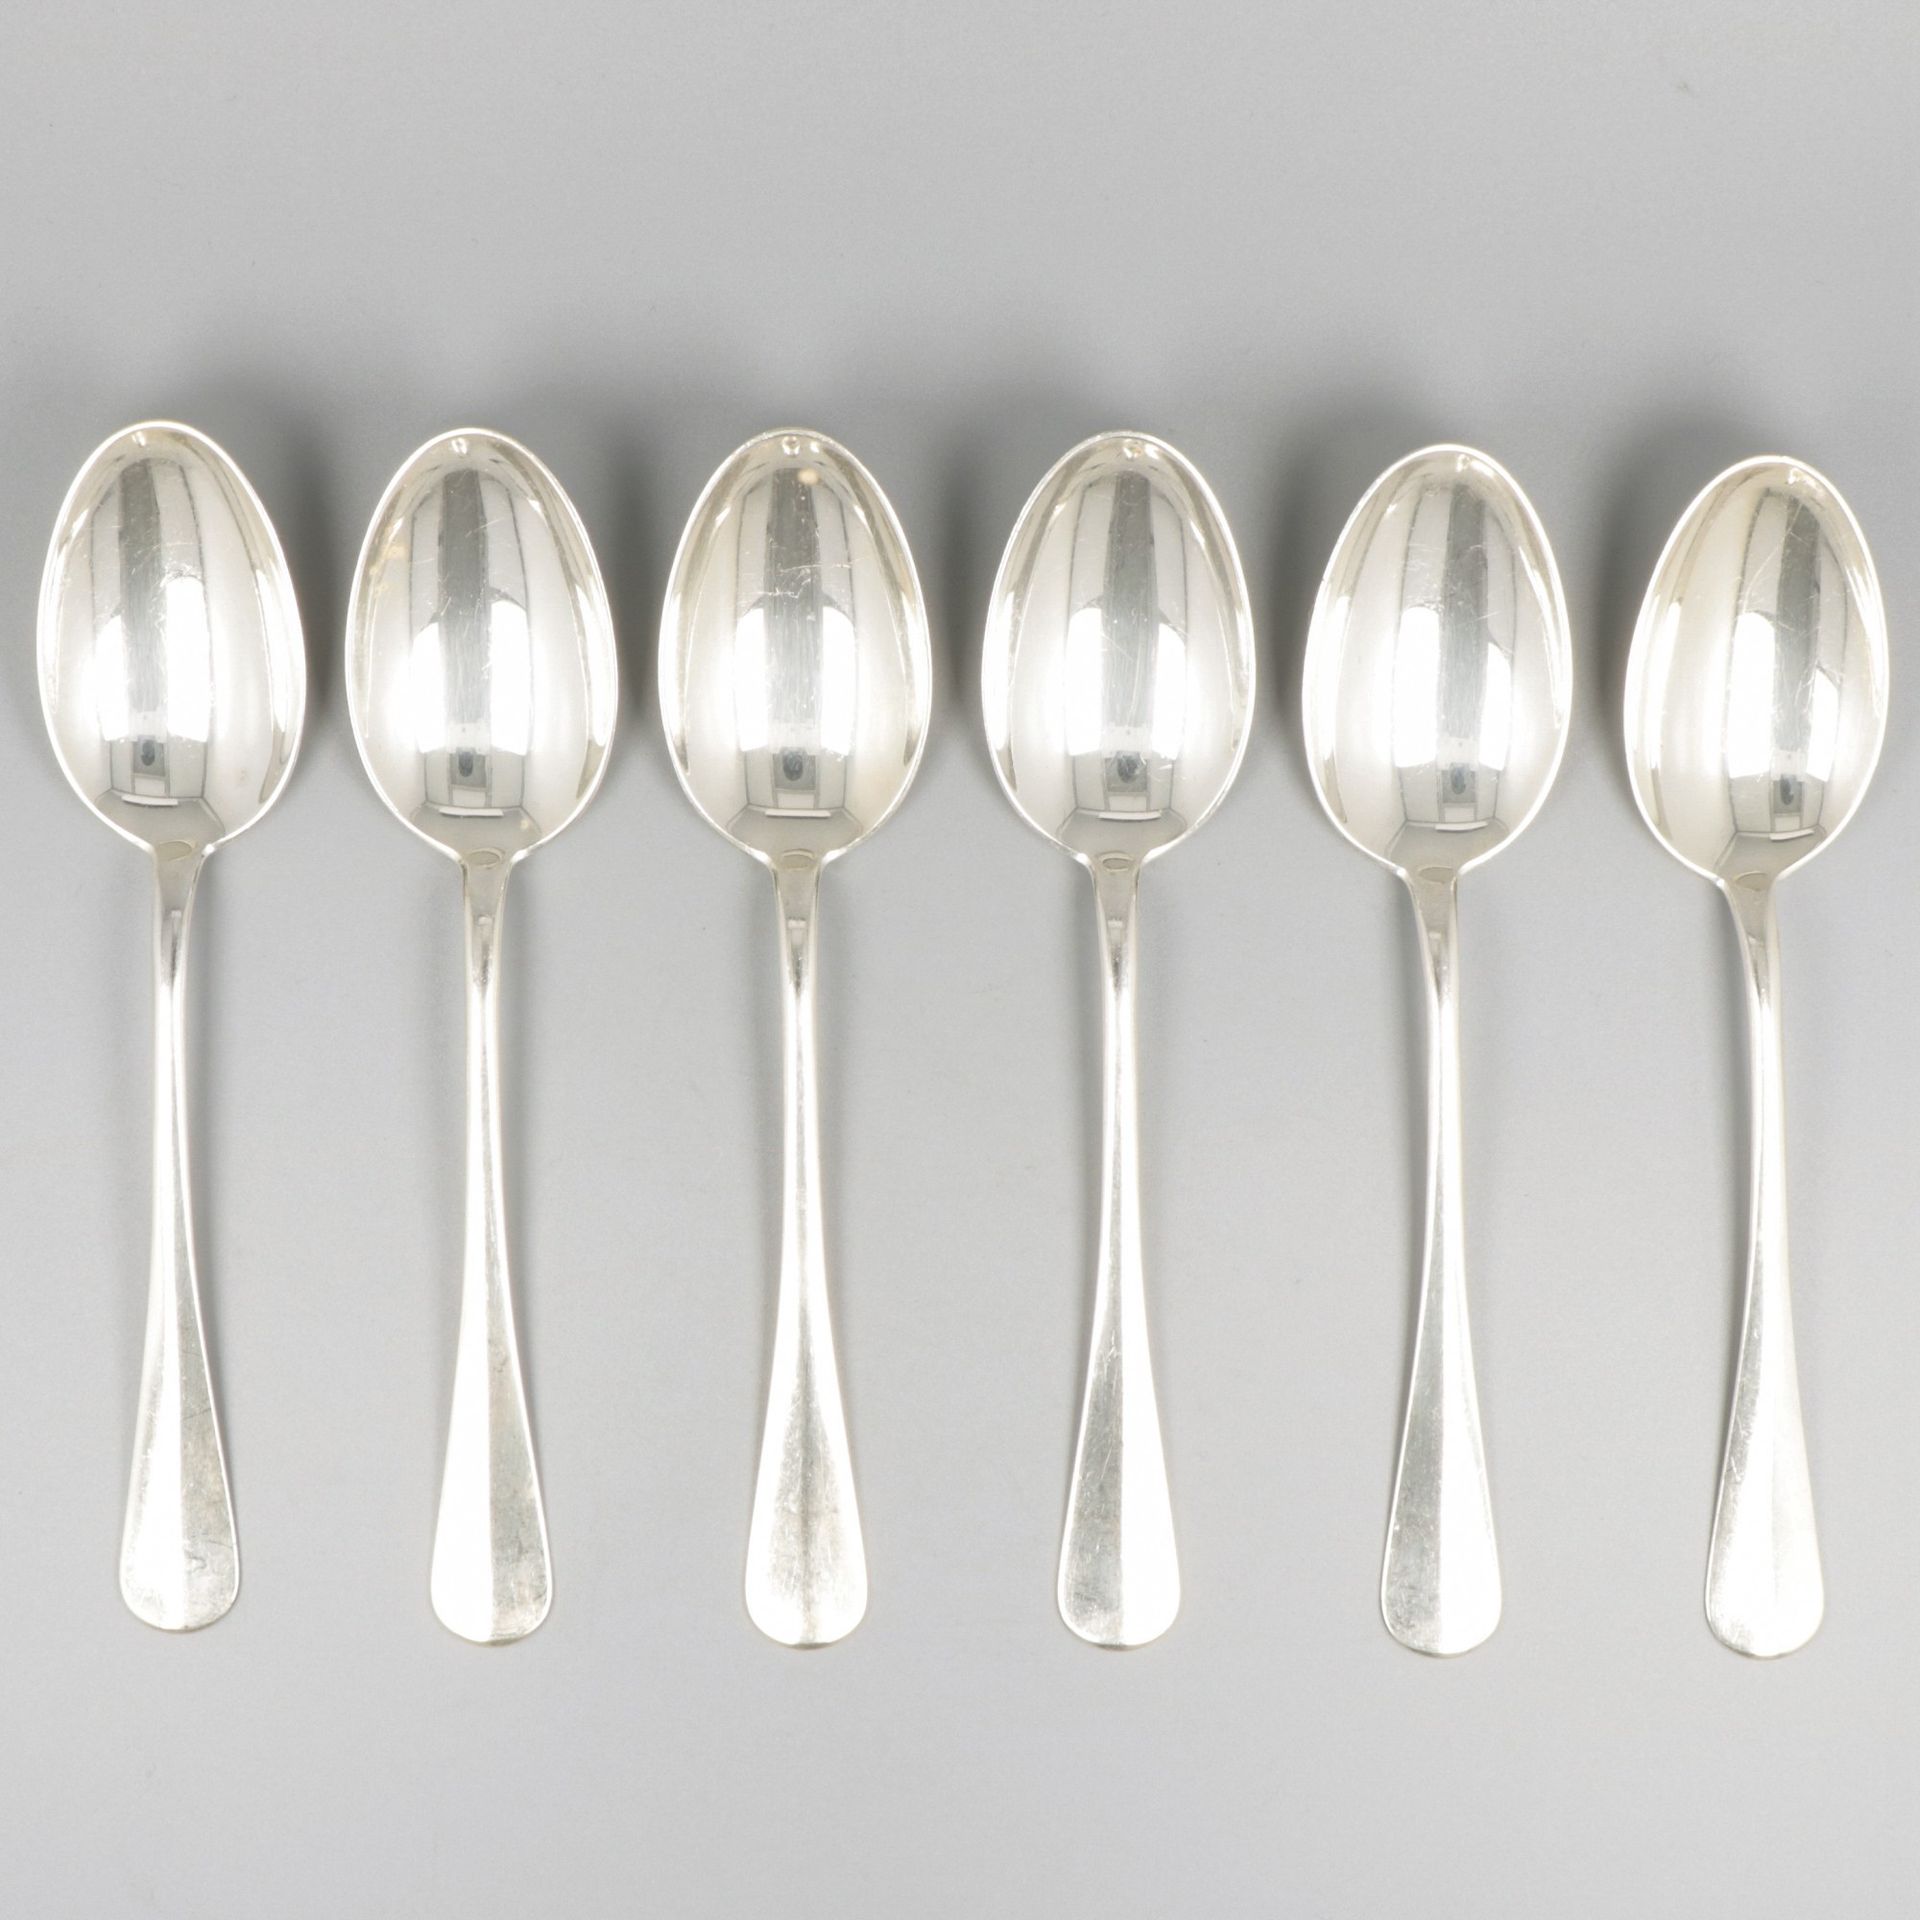 6-piece set dinner spoons silver. "Hollands glad" oder holländisch glatt. Nieder&hellip;